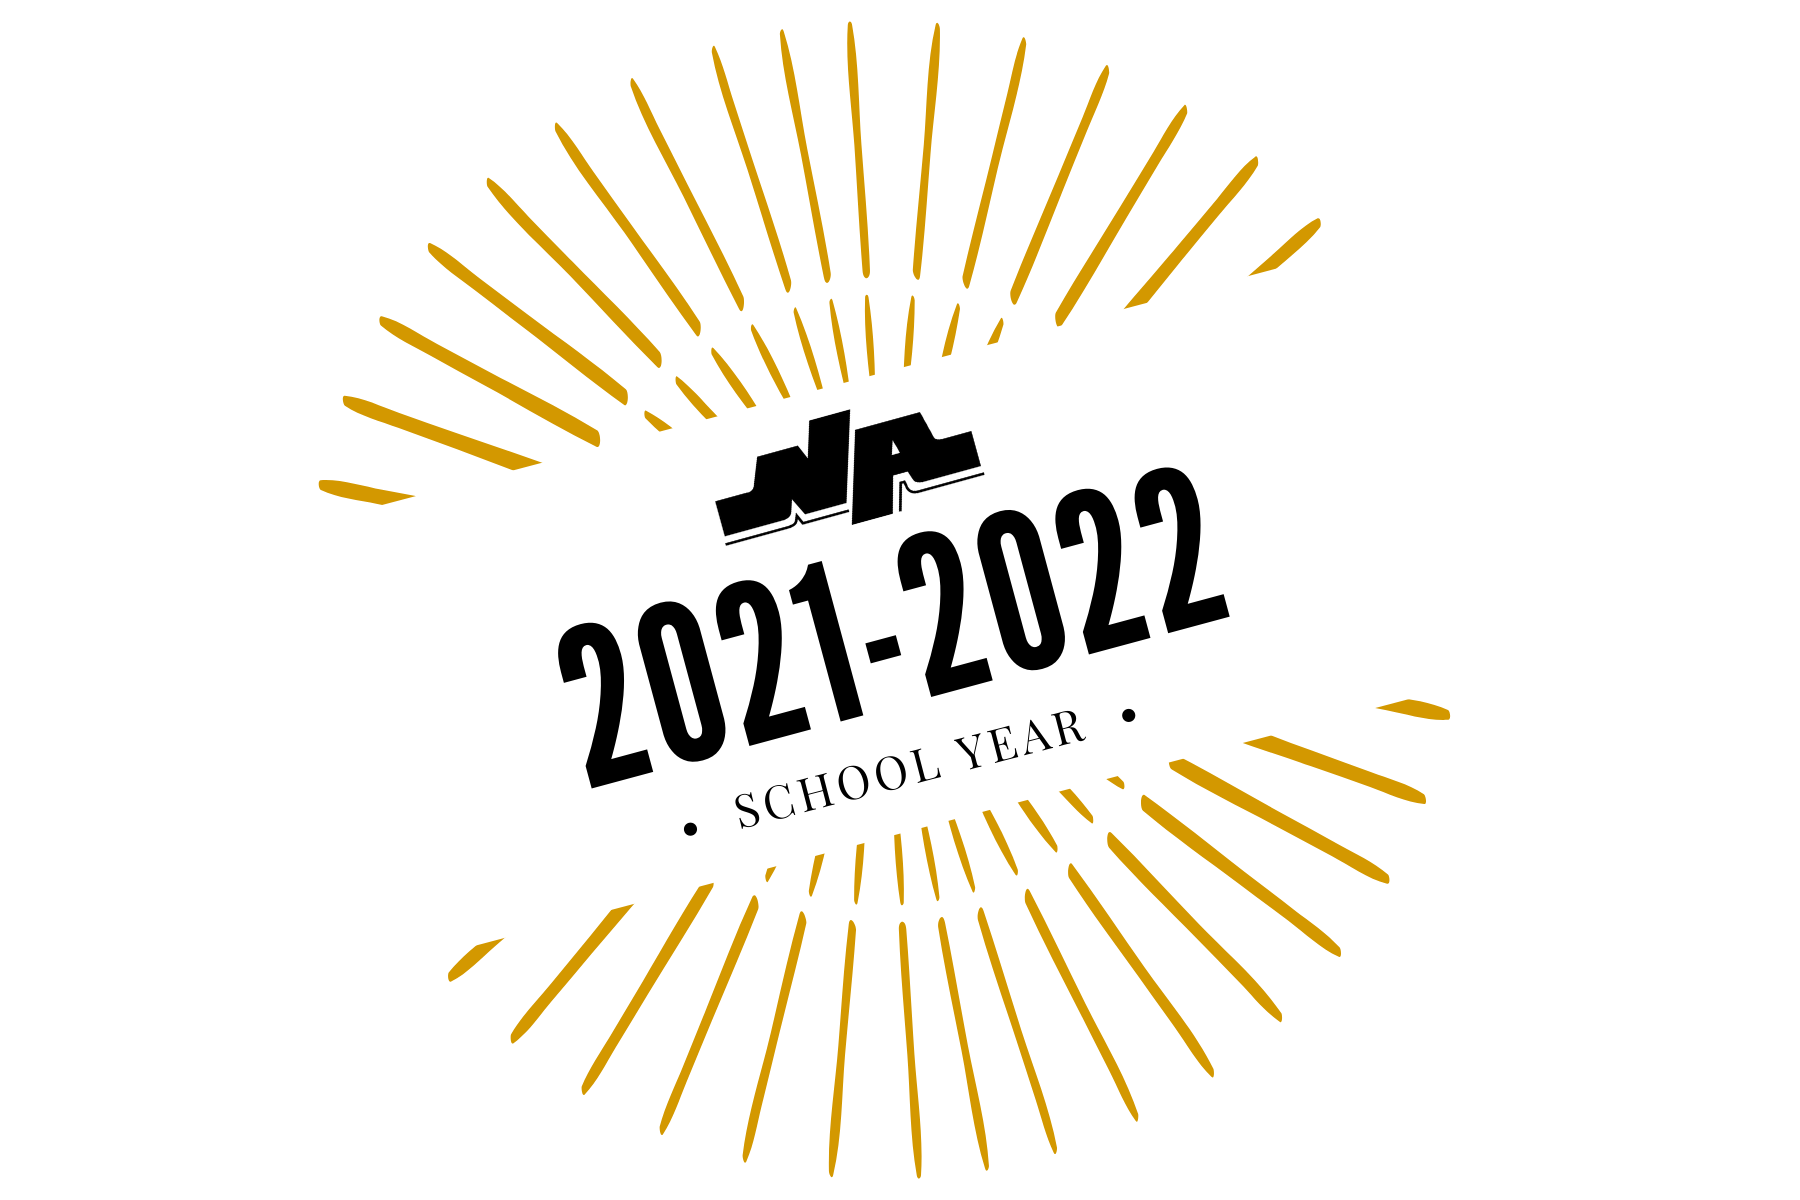 2021-2022 School Year